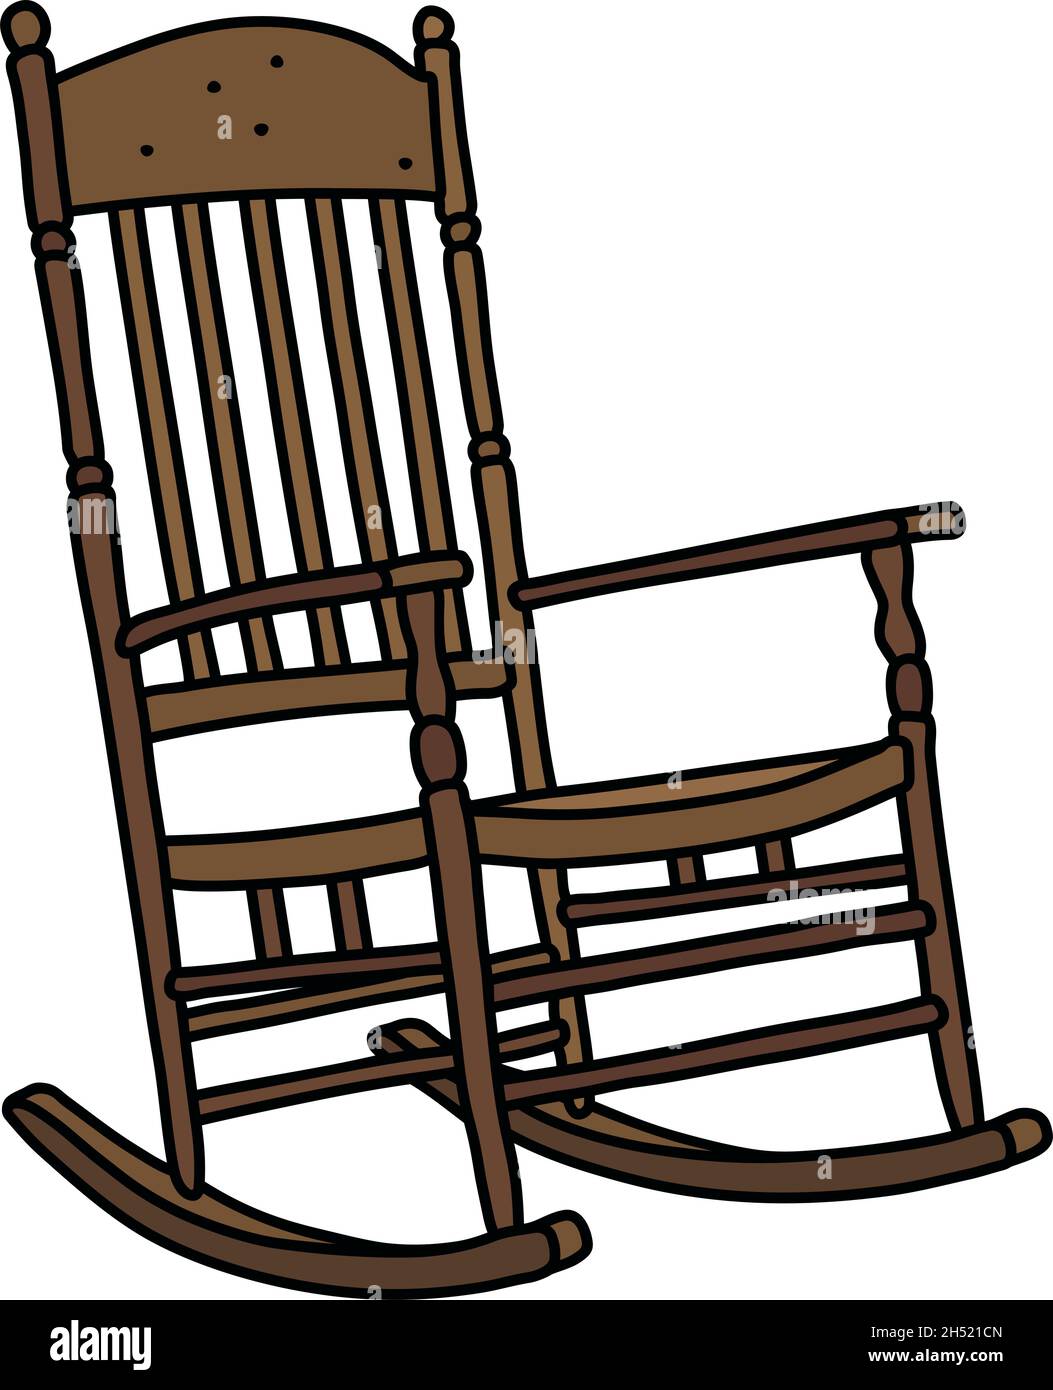 Le dessin à la main vectorisé d'un ancien fauteuil à bascule en bois Image  Vectorielle Stock - Alamy